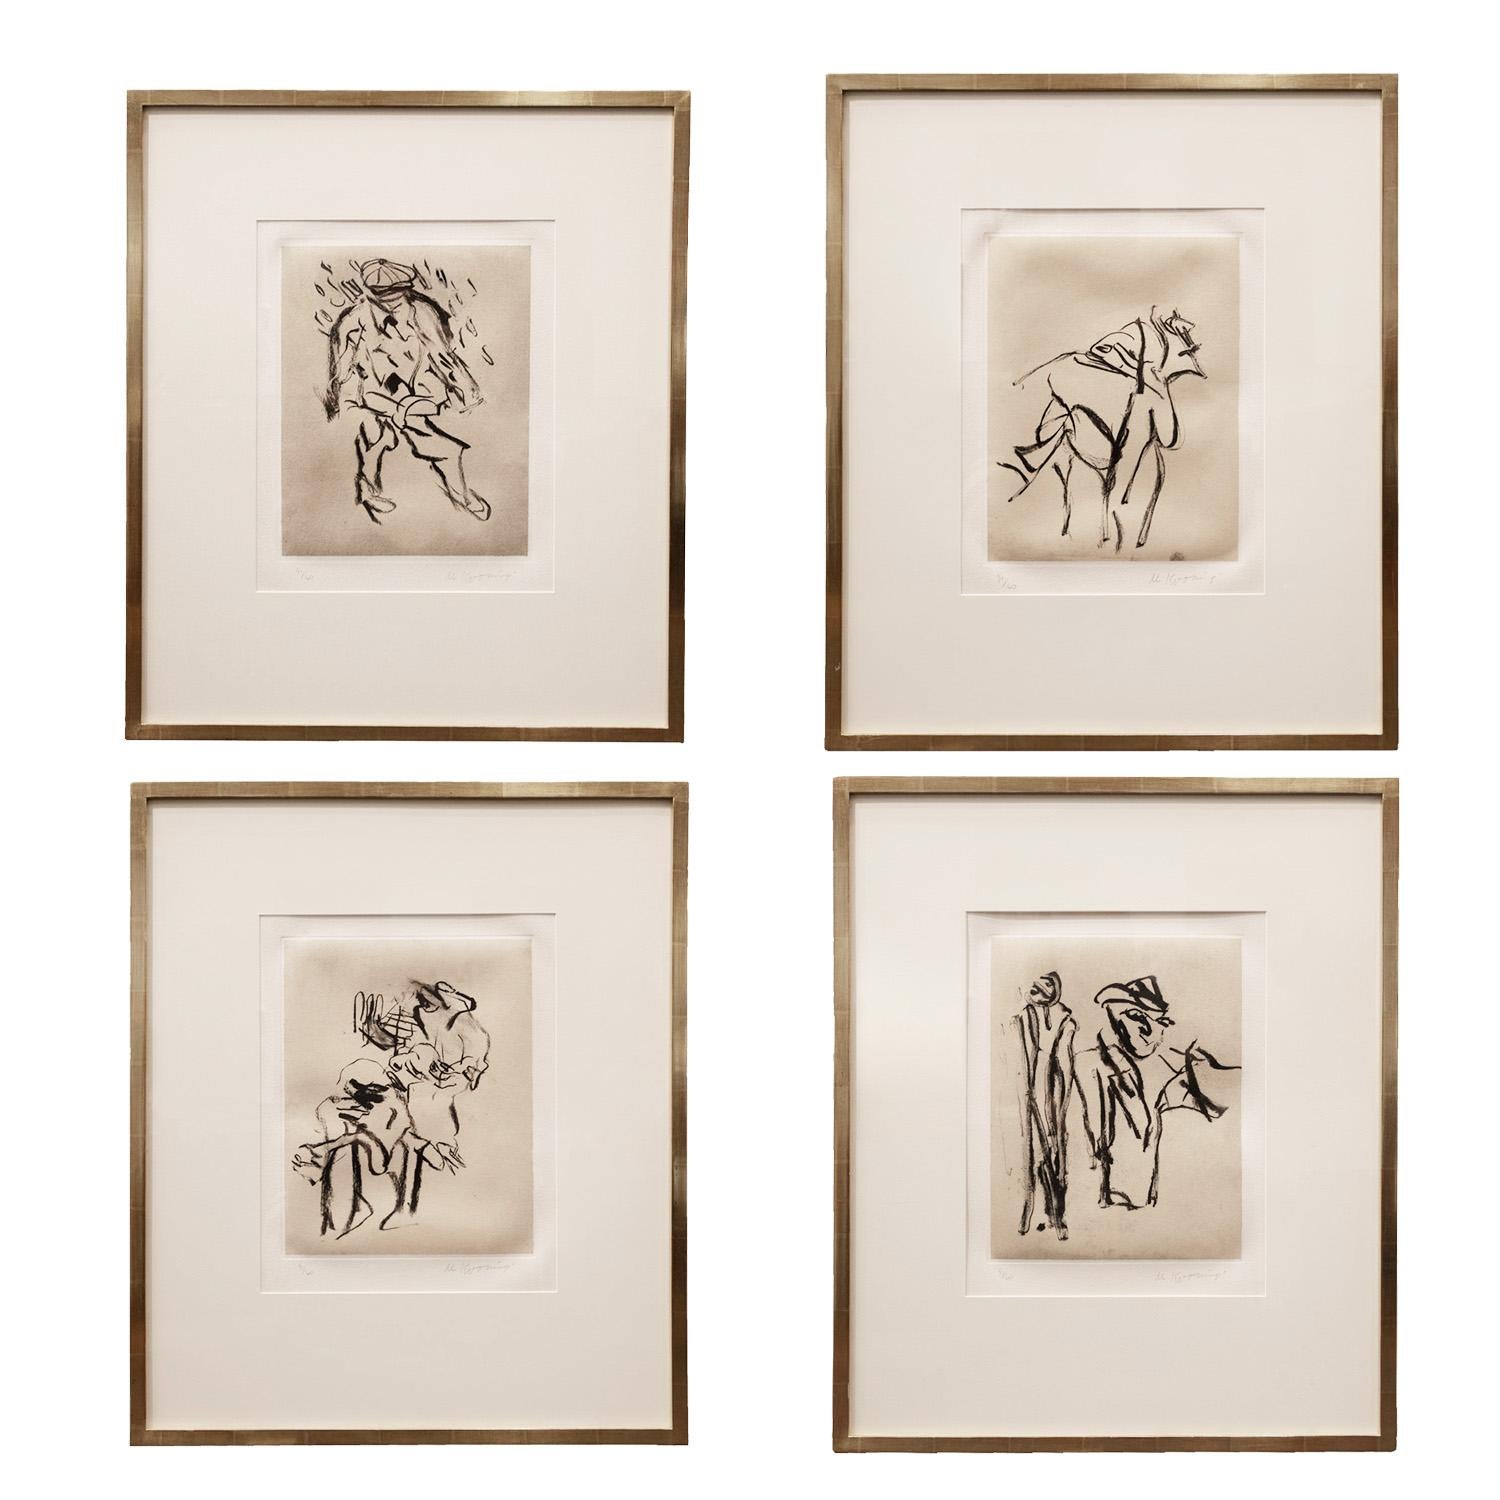 Fin du 20e siècle Willem De Kooning ensemble complet de 17 lithographies signées et numérotées 1988 en vente